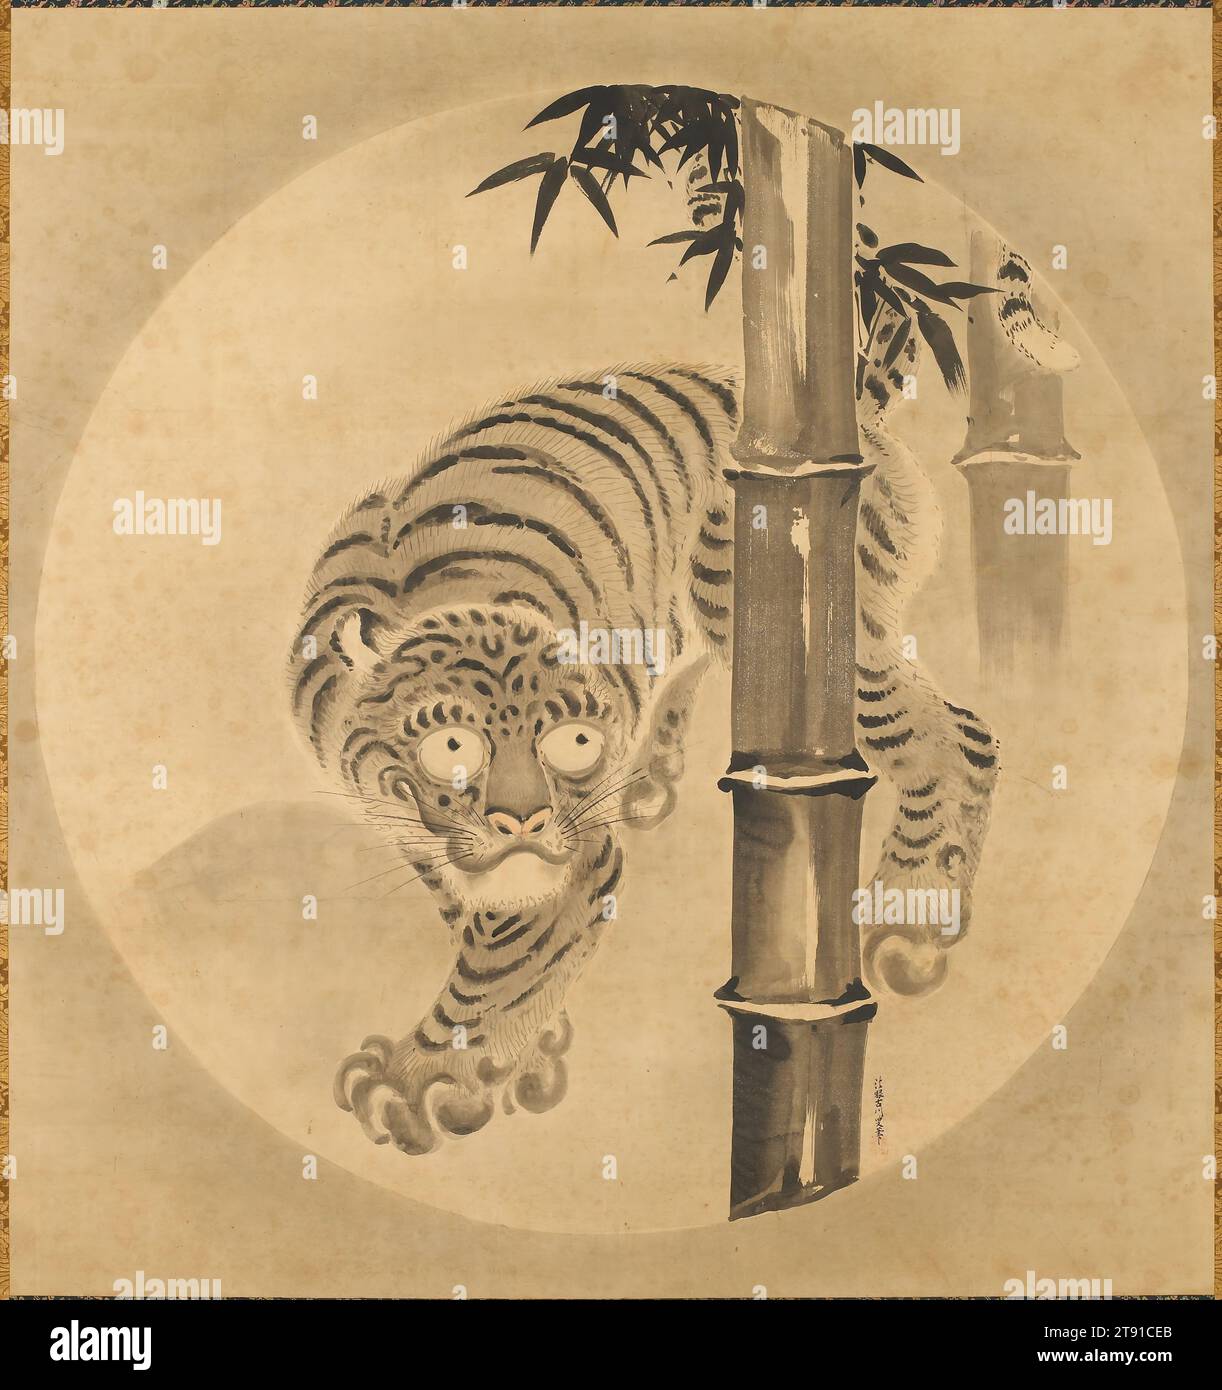 Tigre émergeant de bambou, début du 18e siècle, Kano Tsunenobu, Japonais, 1636 - 1713, 58 1/2 x 55 po (148,59 x 139,7 cm) (image)108 1/2 x 63 pouces (275,59 x 160,02 cm) (sans rouleau), rouleau suspendu ; encre et couleur sur papier, Japon, 18e siècle, les tigres comme sujet de peinture sont devenus populaires parmi les artistes japonais dès le 15e siècle lorsque des exemples chinois ont été apportés au Japon. Au sein des monastères zen, ils sont devenus des symboles de l'esprit terrestre et étaient souvent associés à des images de dragons, emblèmes de l'esprit éclairé en plein essor. Banque D'Images